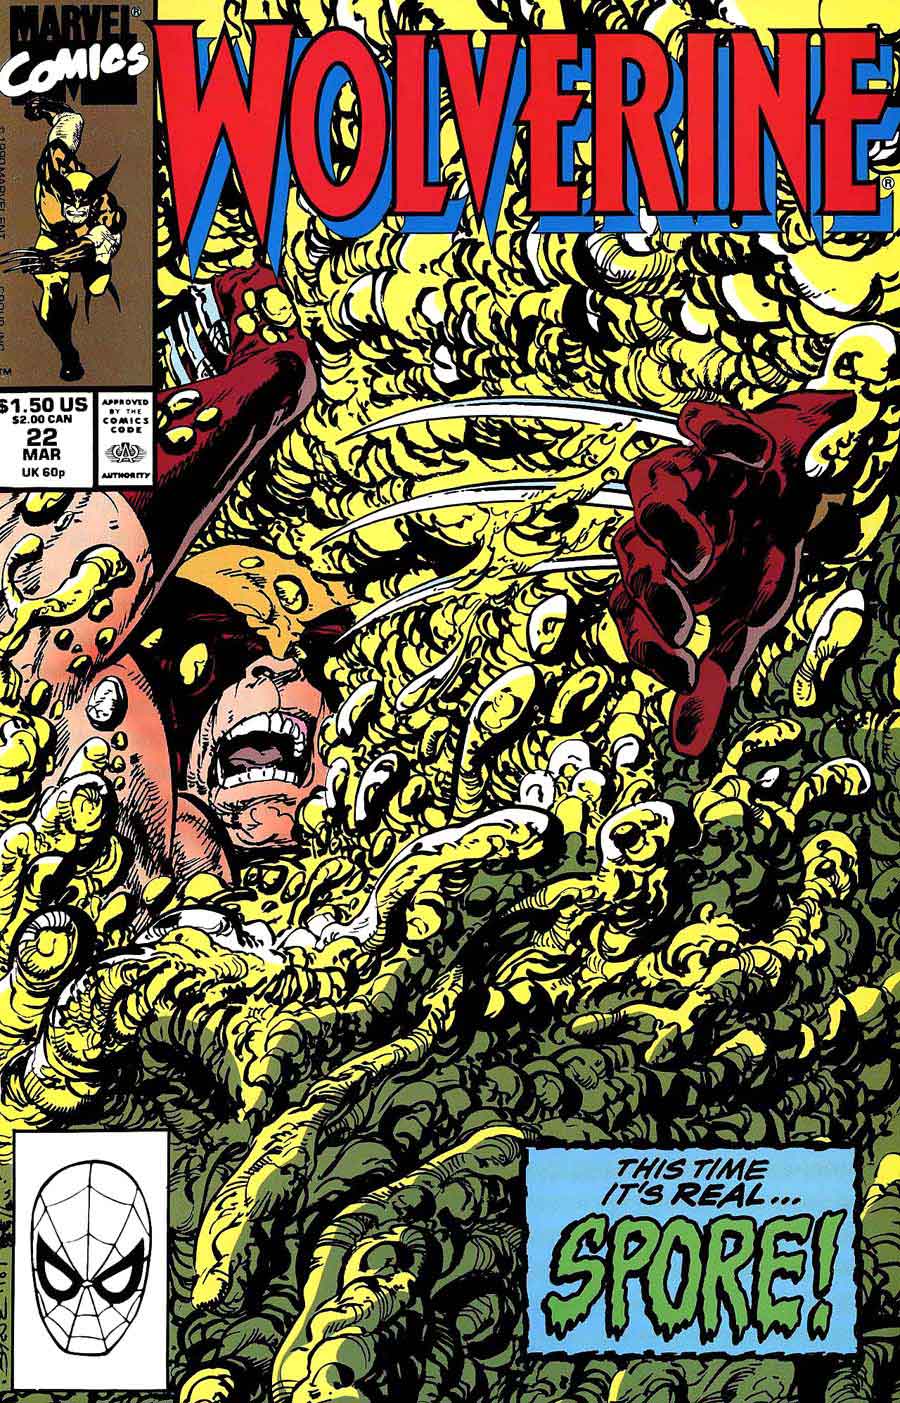 Wolverine v2 #22 marvel 1990s comic book cover art by John Byrne